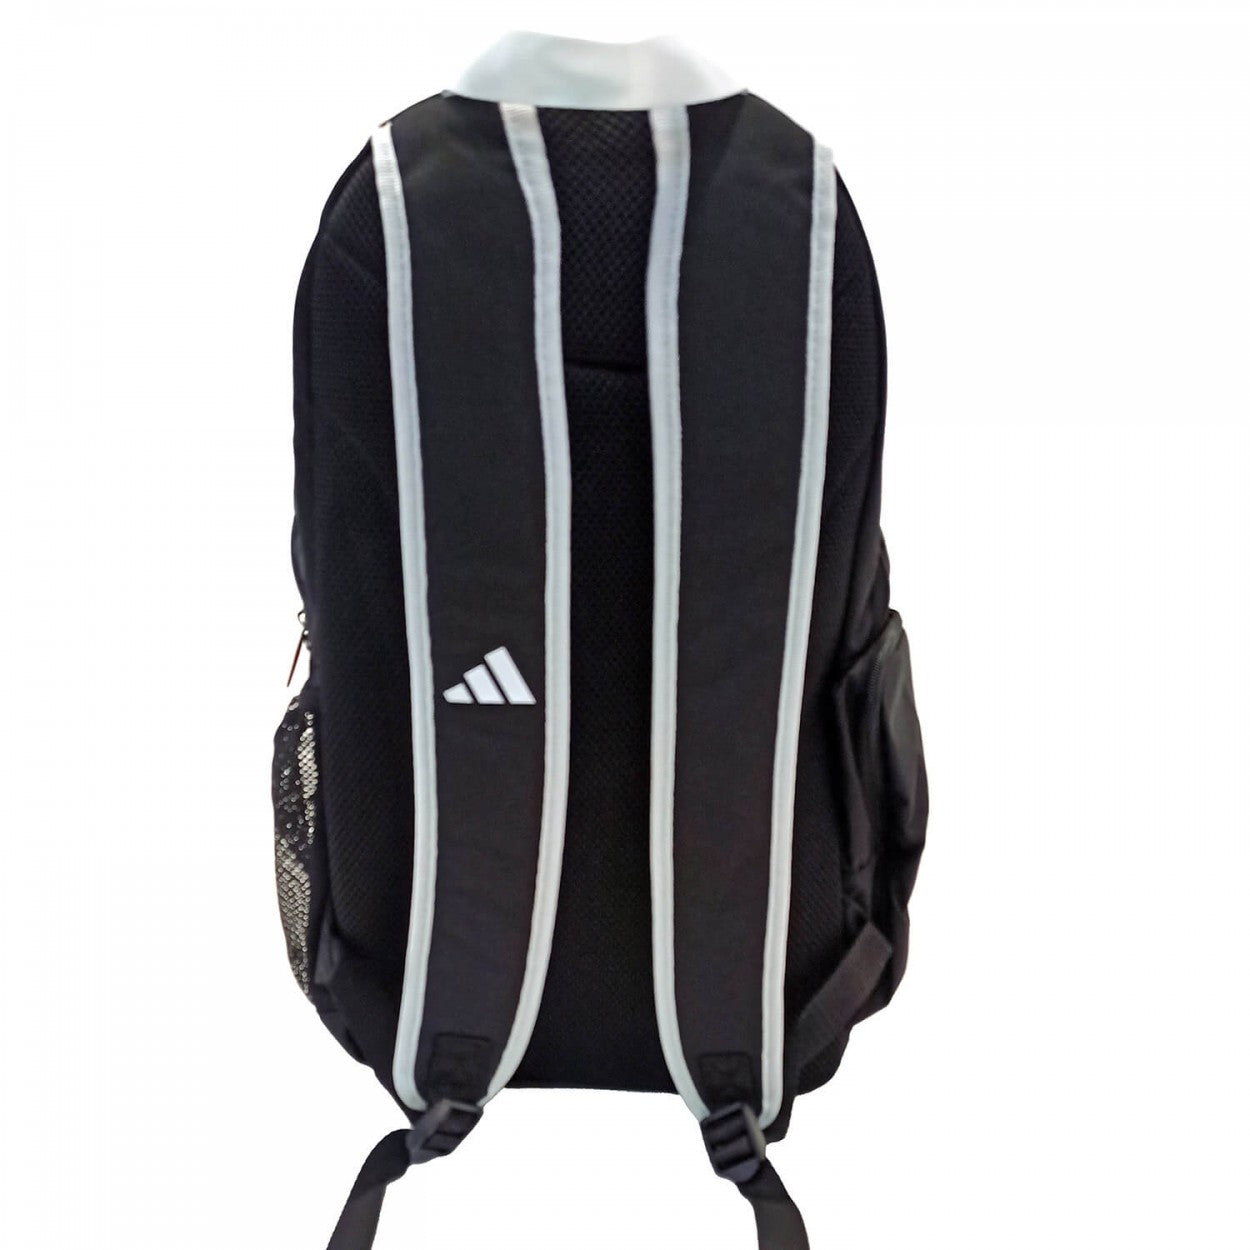 Sport Bag Adidas TKD BODY PROTECTOR Holder BackPack Std, Black